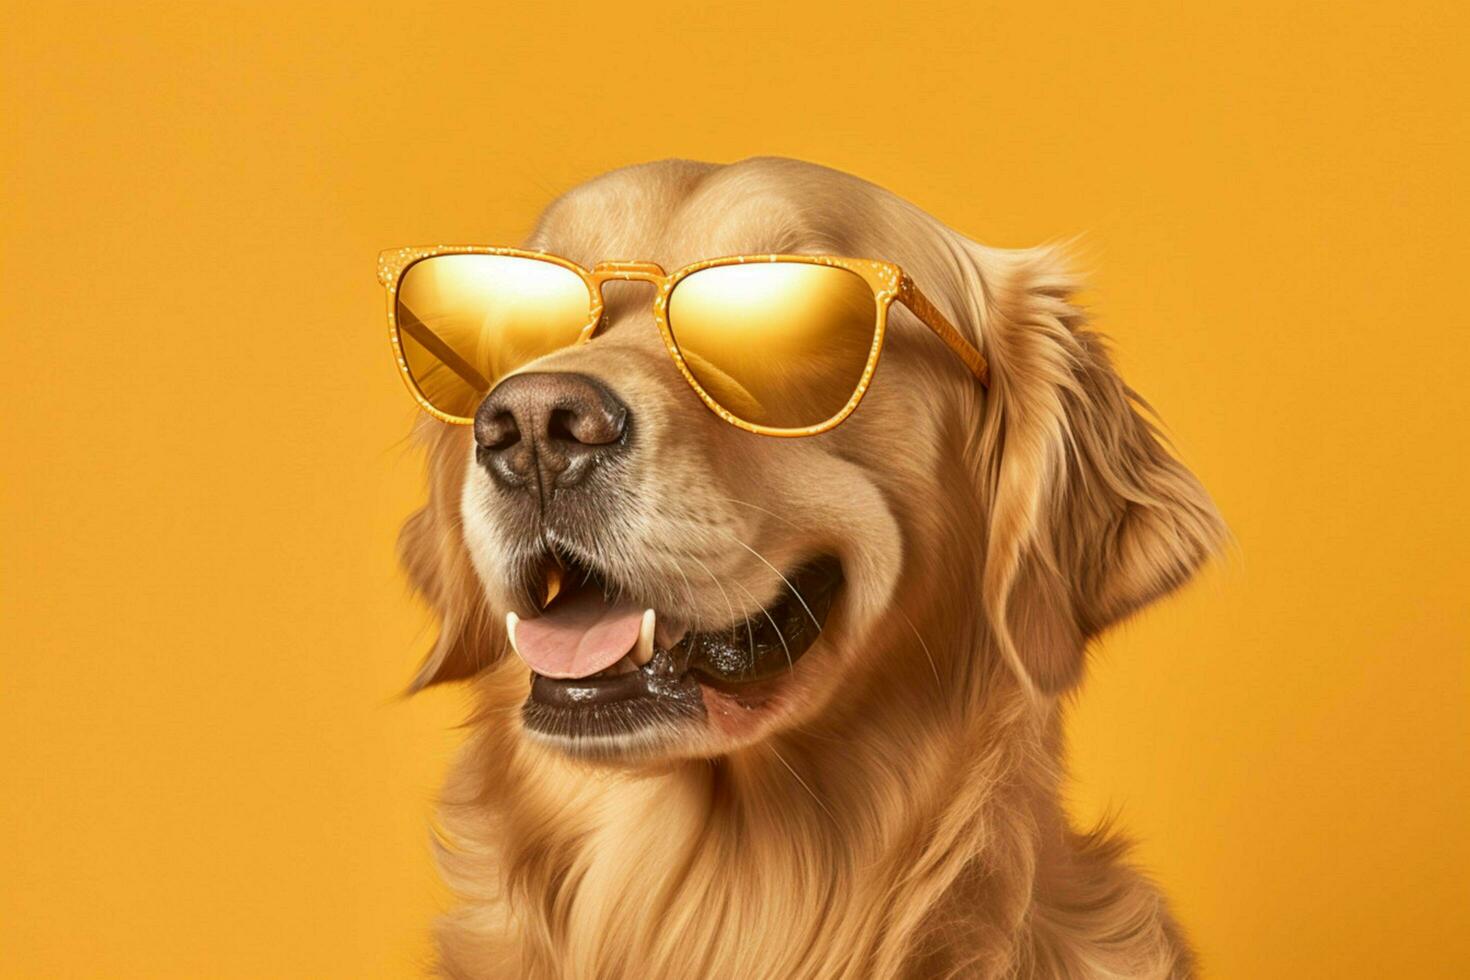 un dorado perdiguero perro vistiendo Gafas de sol en un S.M foto